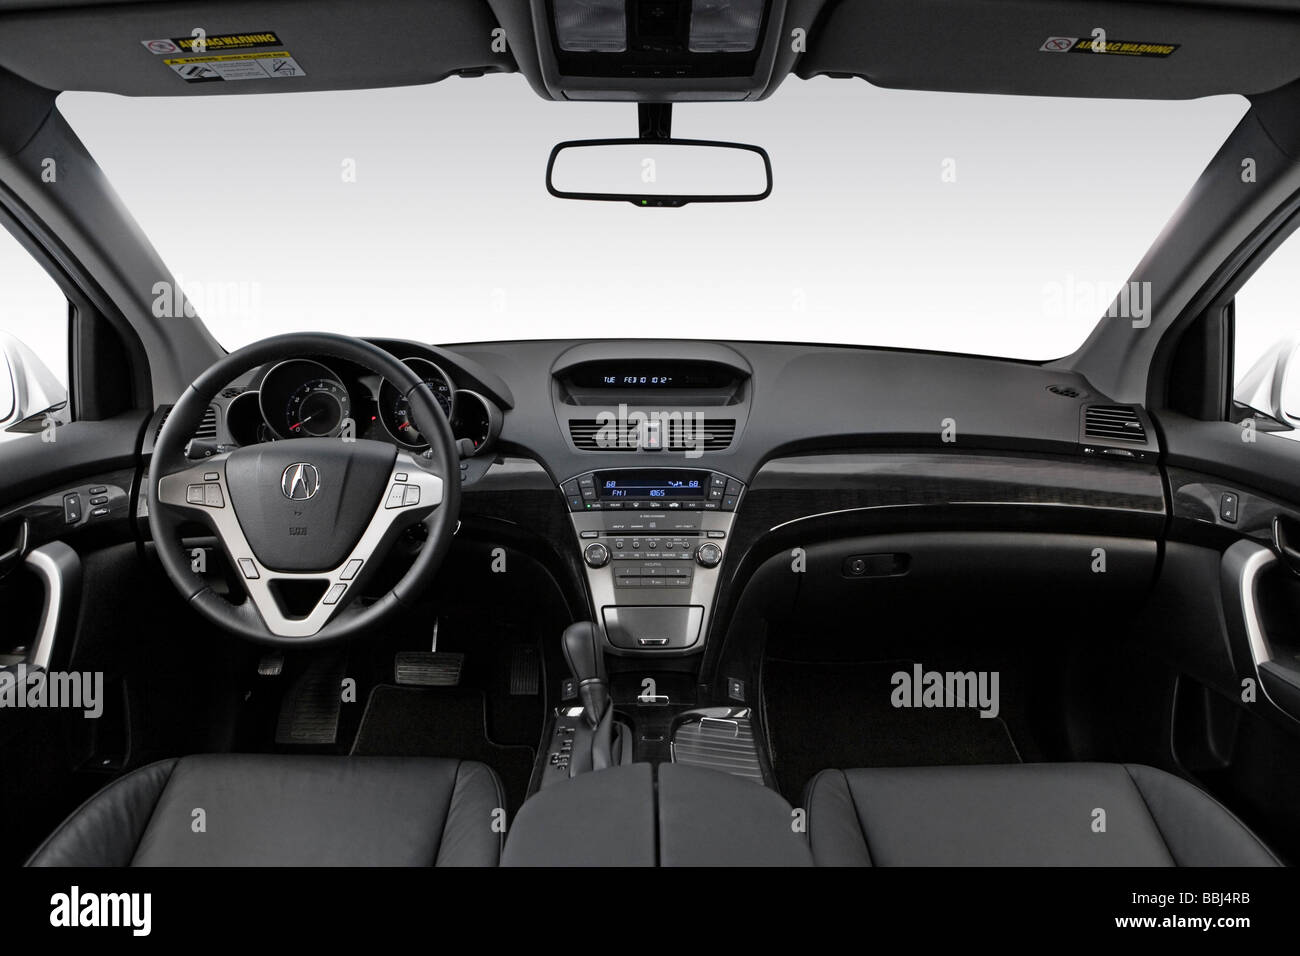 2009 Acura MDX-Basis in Silber - Armaturenbrett, Mittelkonsole, Getriebe Schalthebel Ansicht Stockfoto